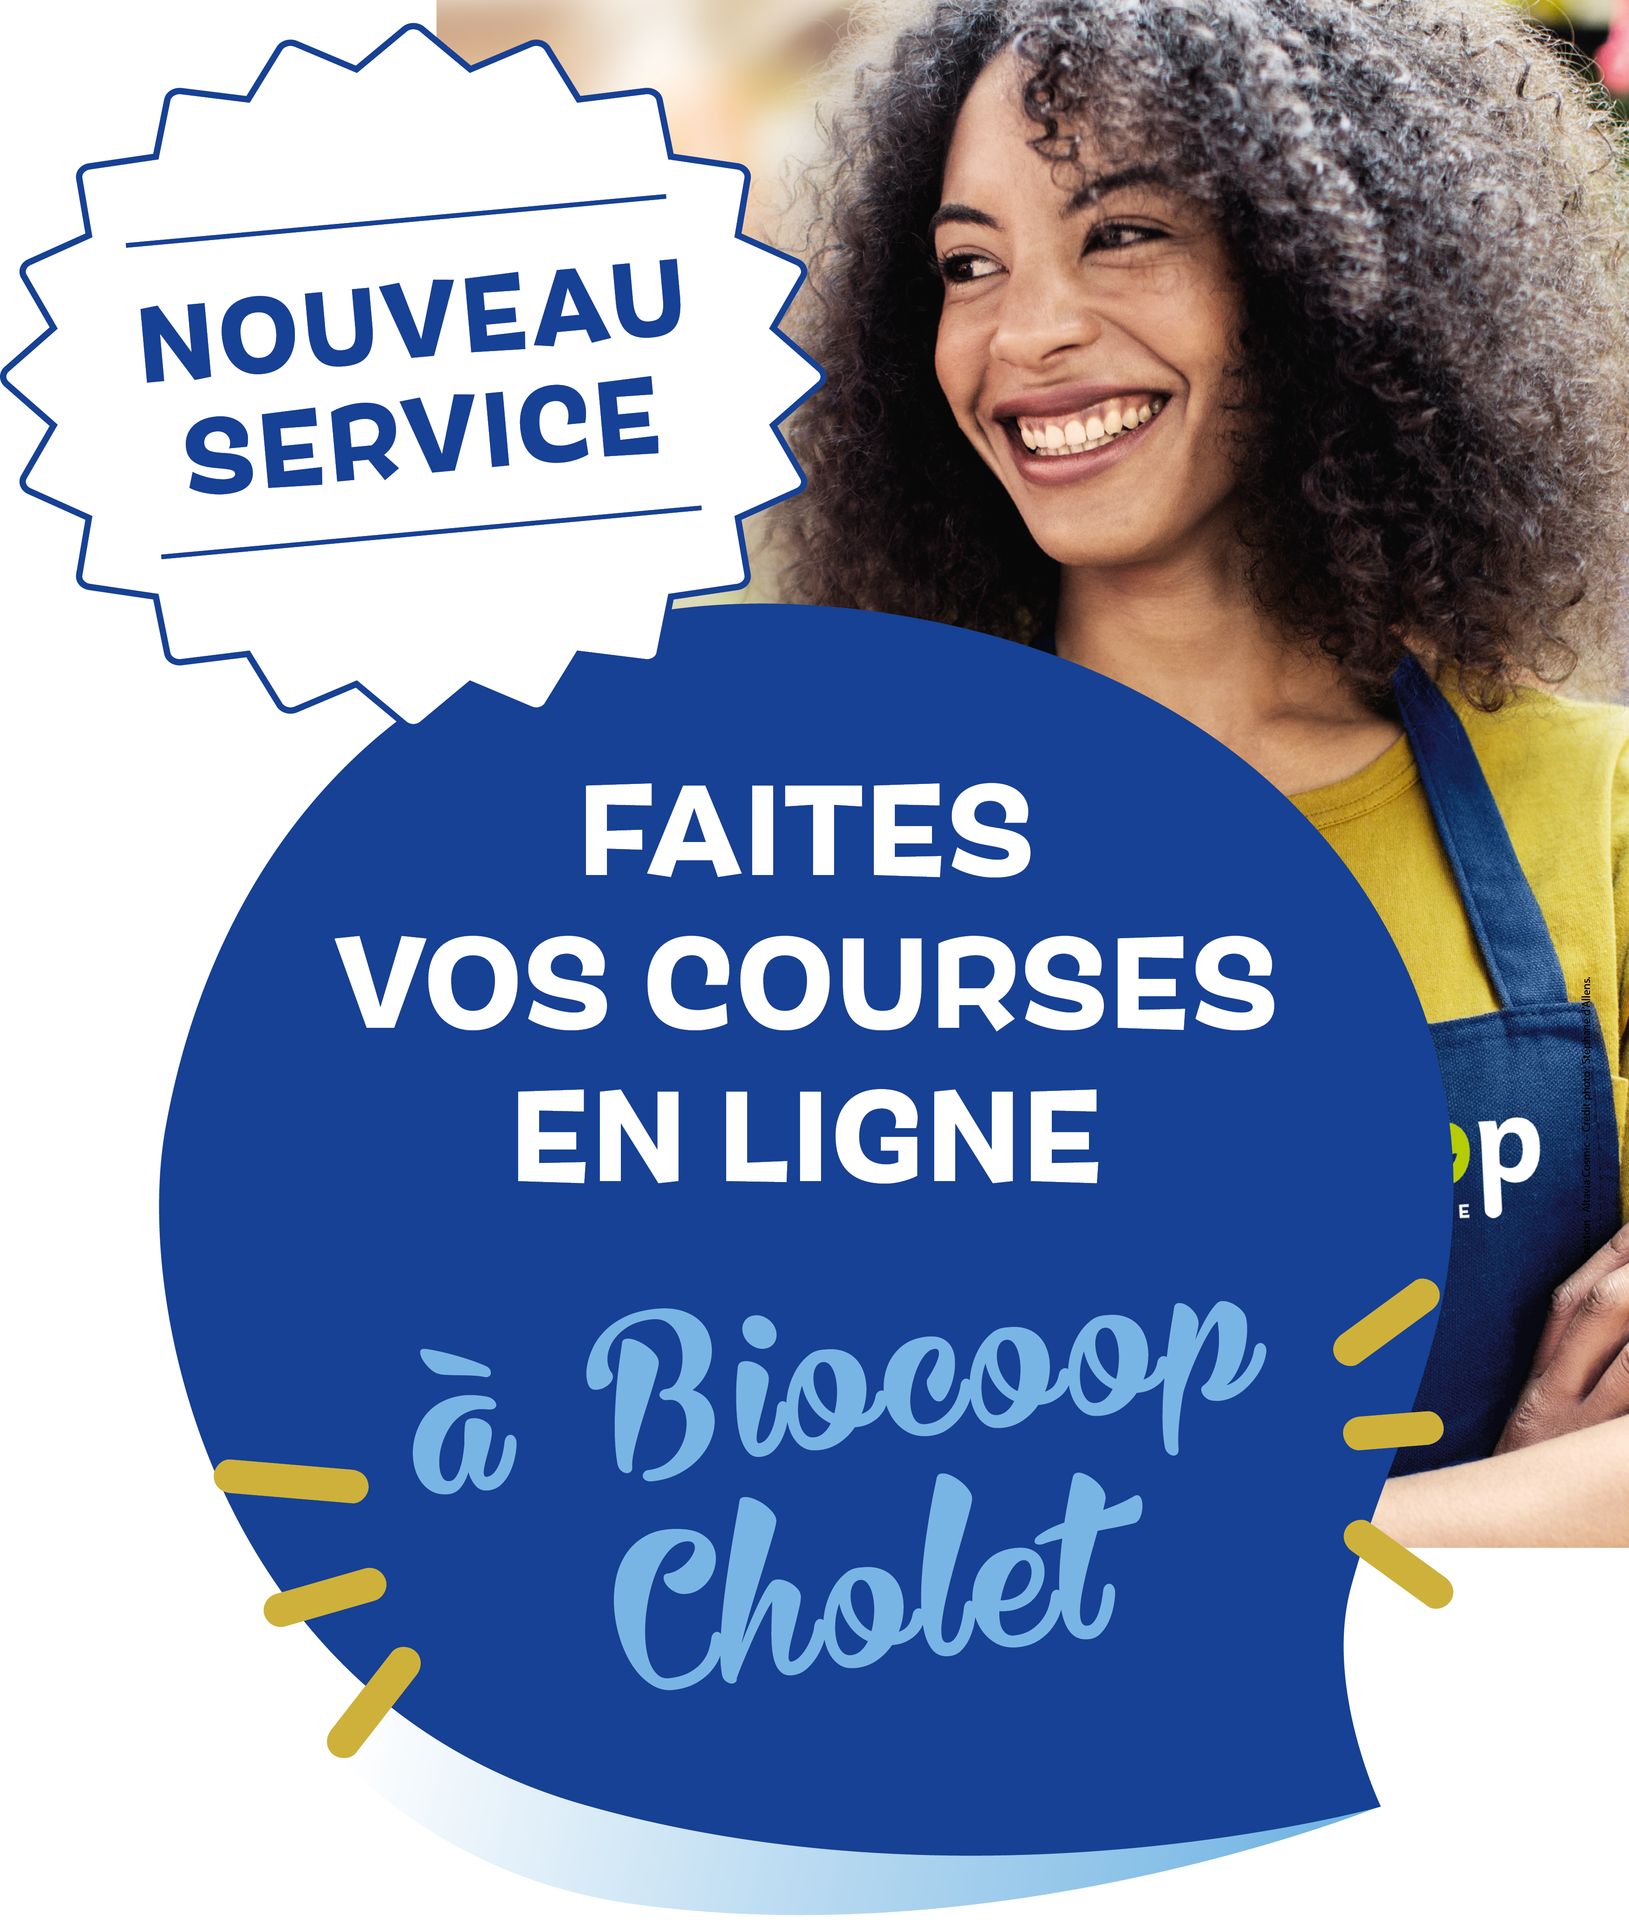 Biocoop Cholet Ouest lance son drive !